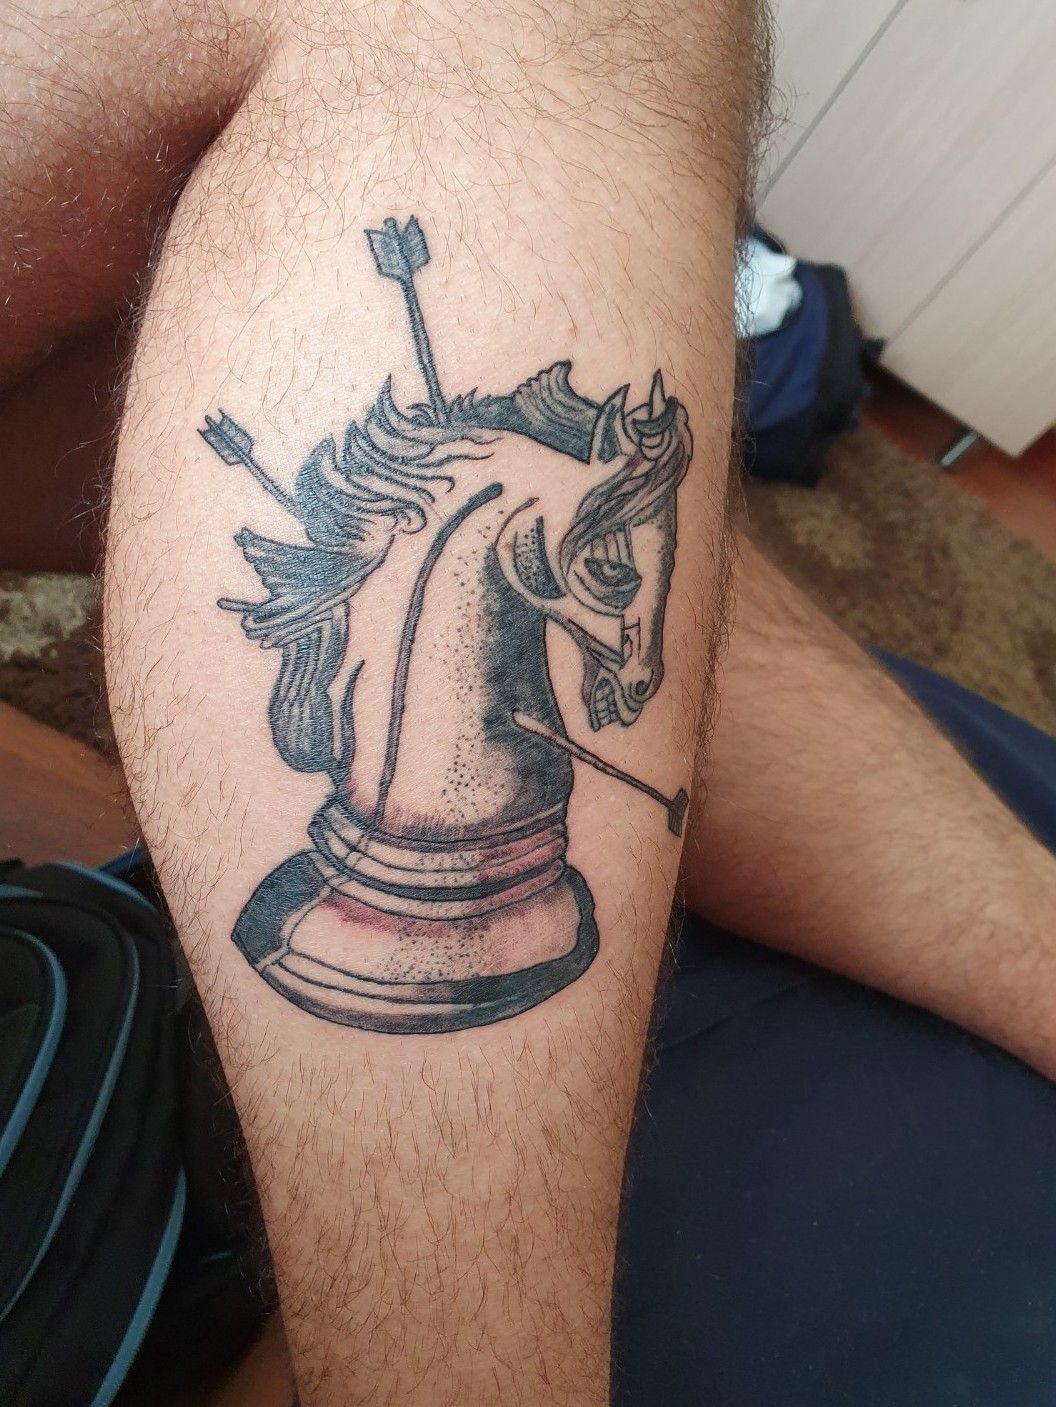 Tattoo sigil Łódź  Stallion tattoo, Chess tattoo, Horse tattoo